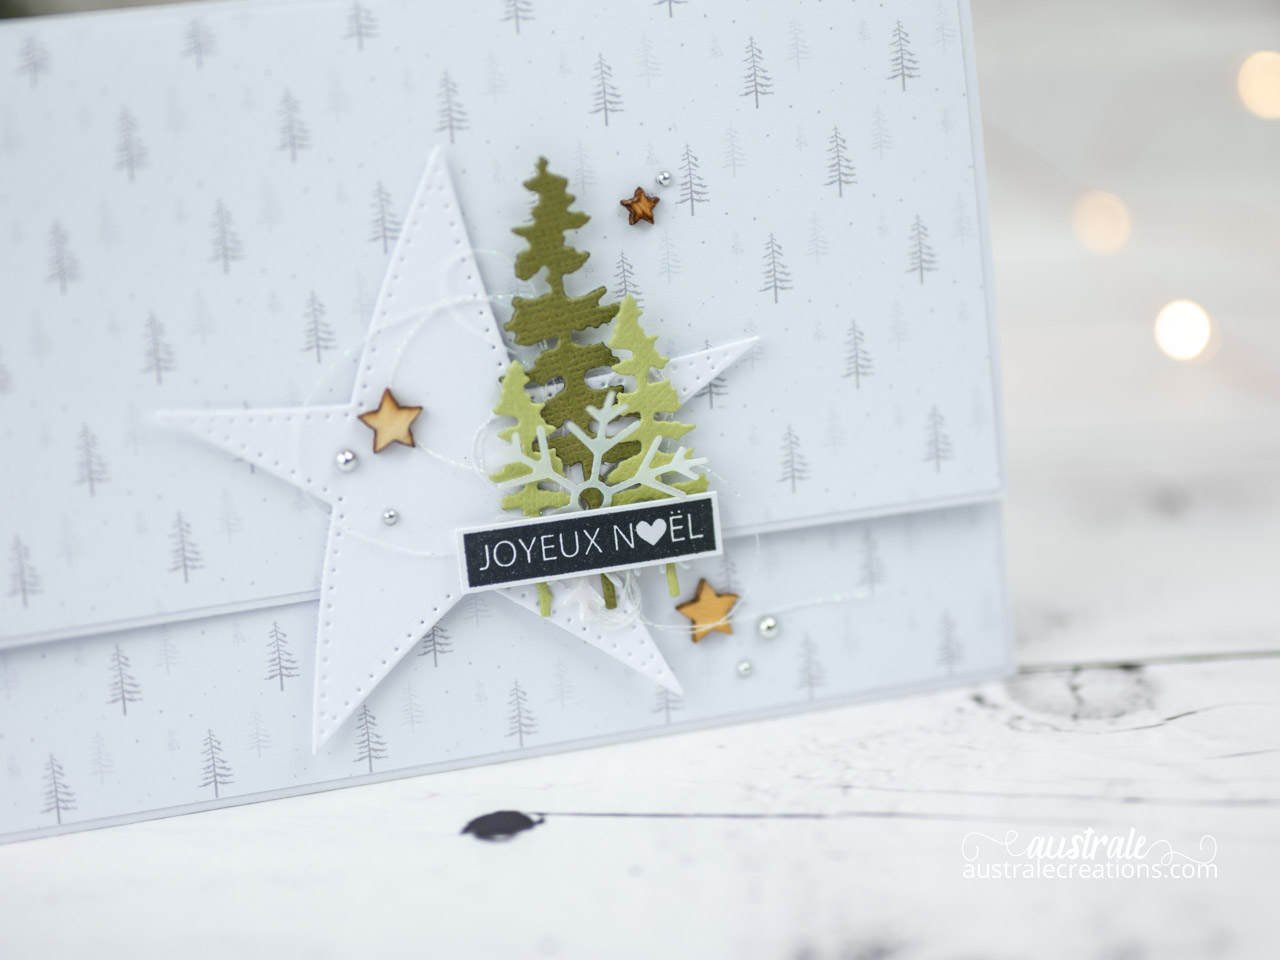 Création d'une pochette cadeau avec rabat aimanté, étoiles, sapins et étiquette façon dymo.